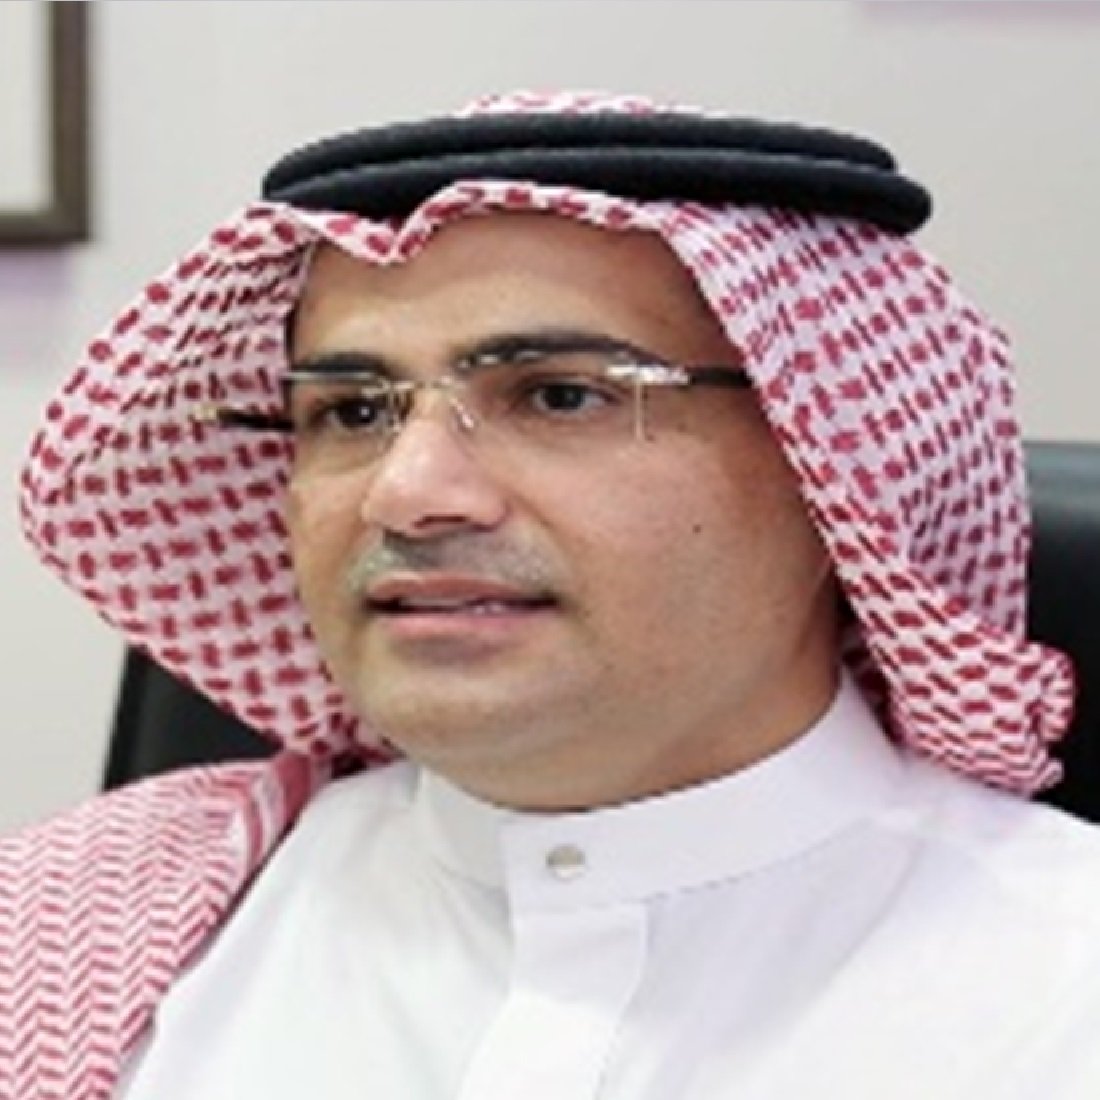 Dr. Meteb Alfoheidi